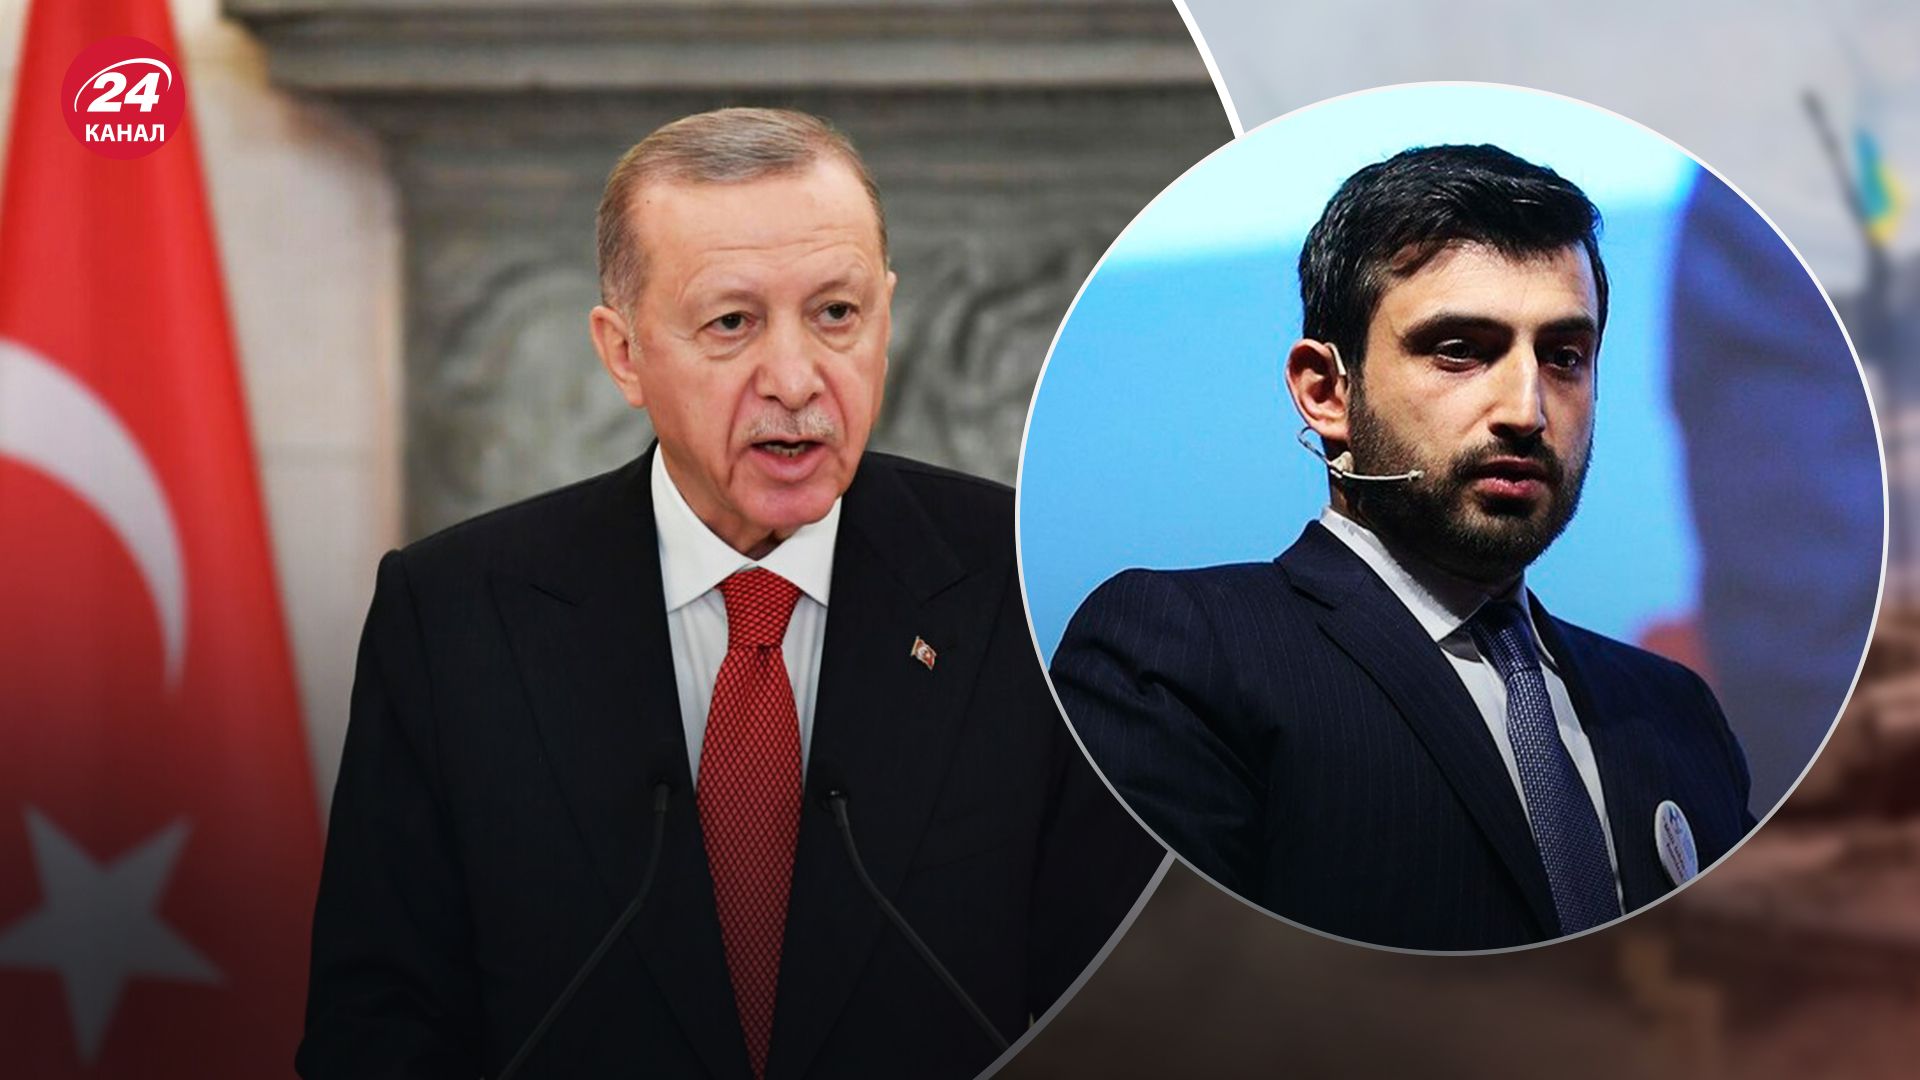 Сельчук Байрактар может стать президентом Турции